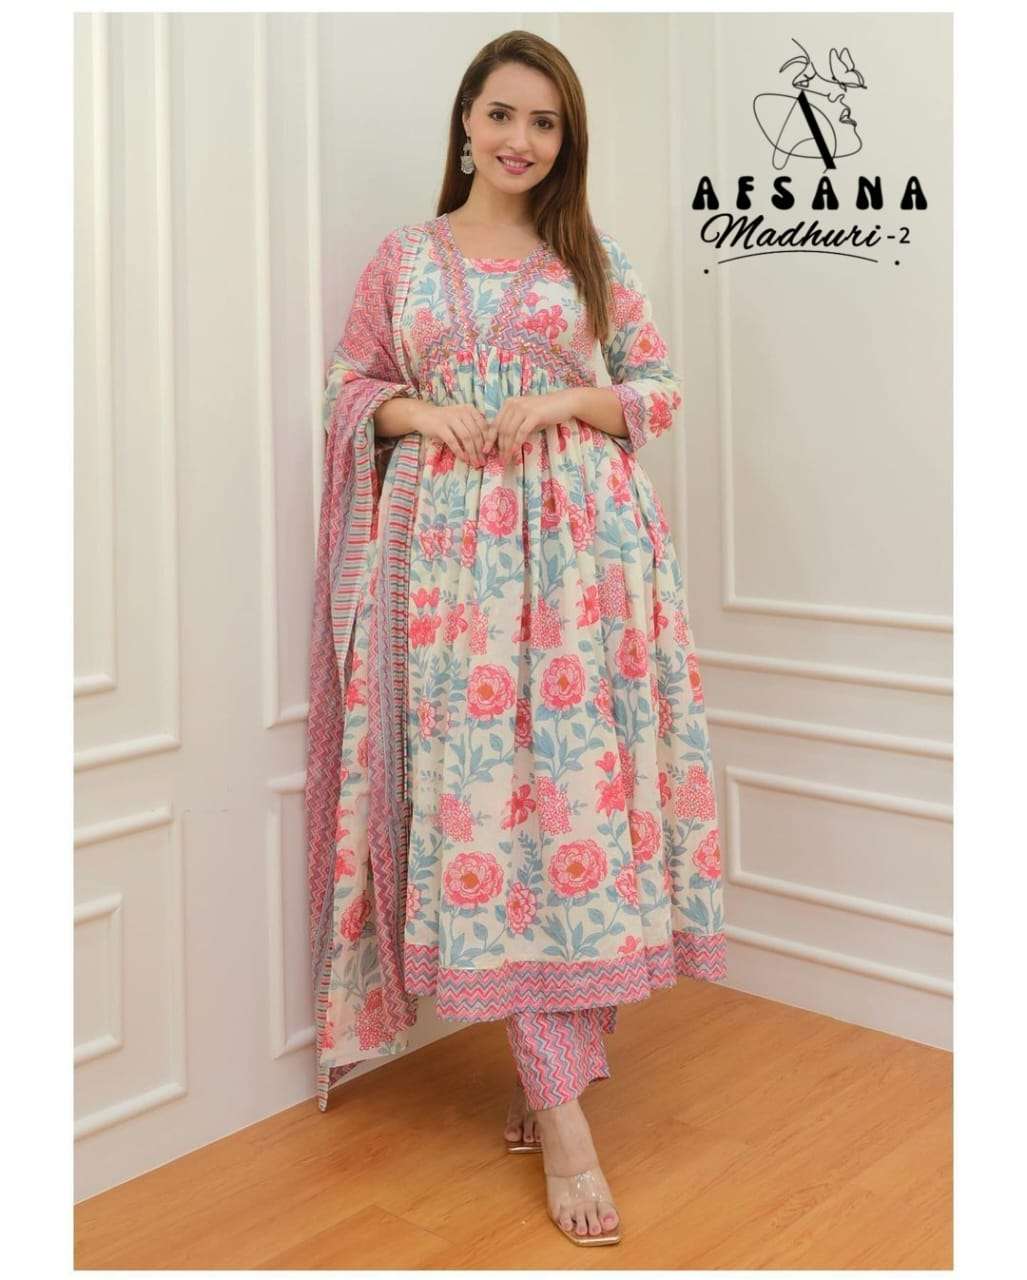 Afsana Madhuri Vol 2 New Pattern Stylish Aaliya Style Combo Designs Dress